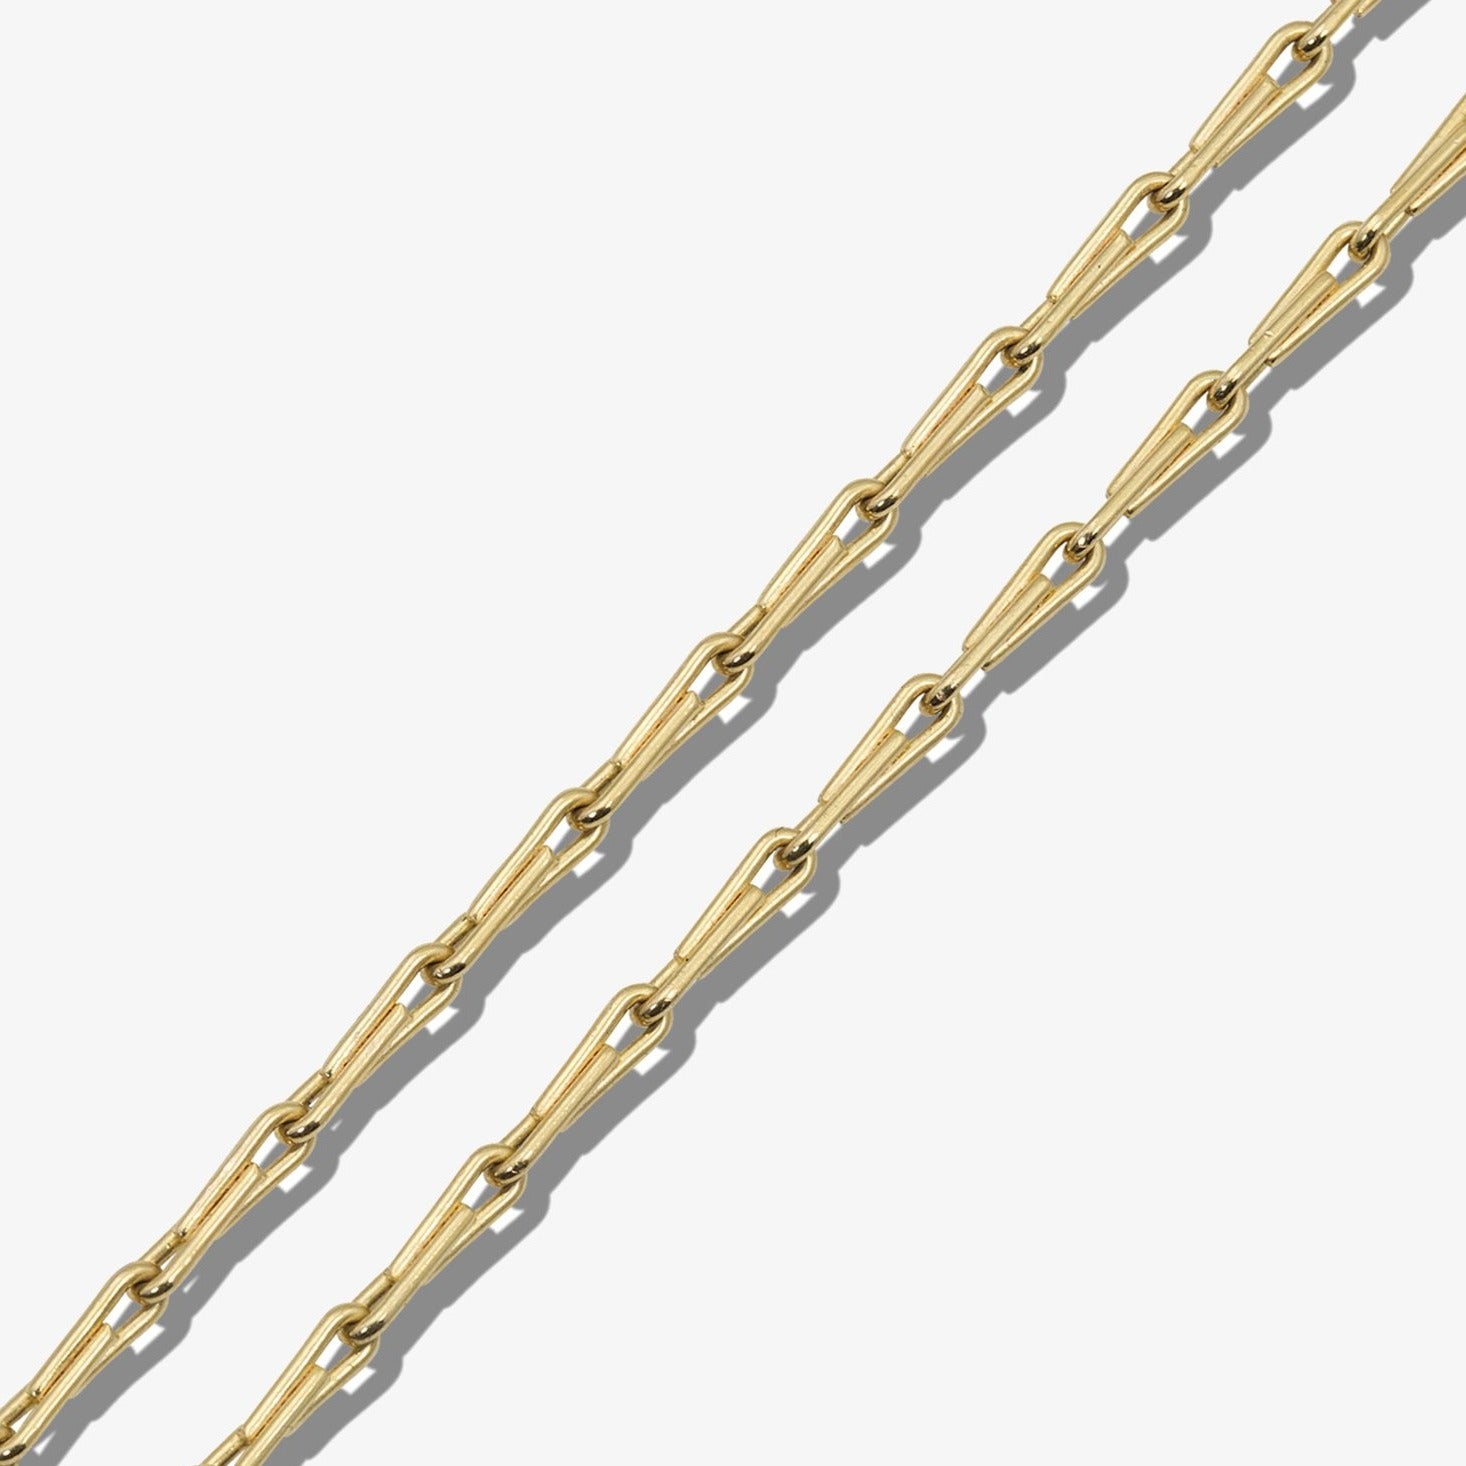 Sleek Chain, Lightweight